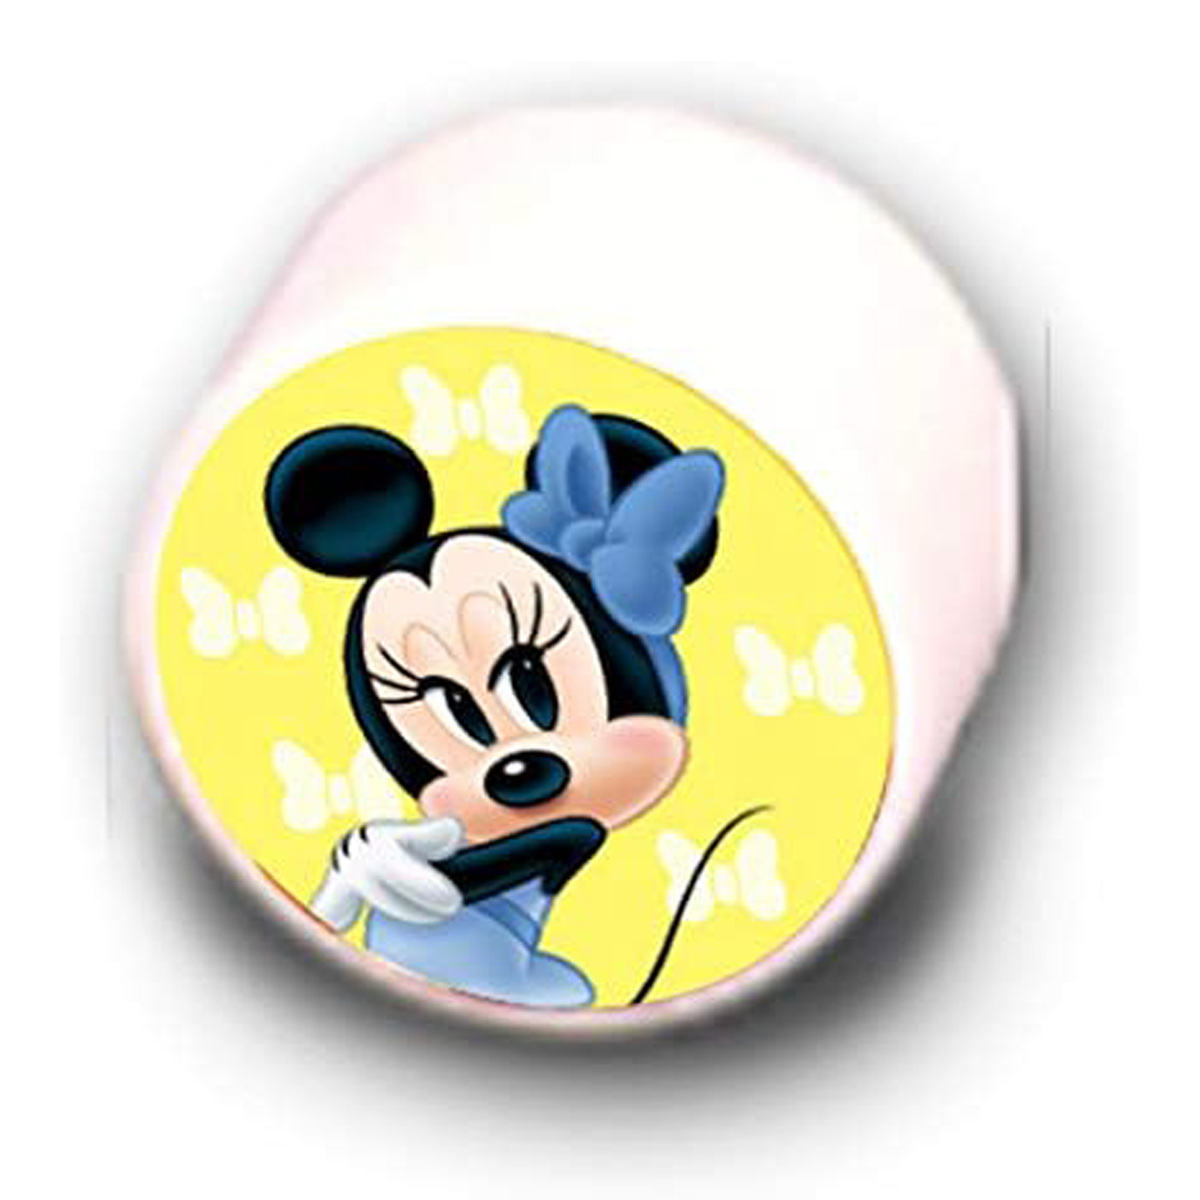 Kiddie Land Disney Minnie Play n Sort Activity Train, 054882